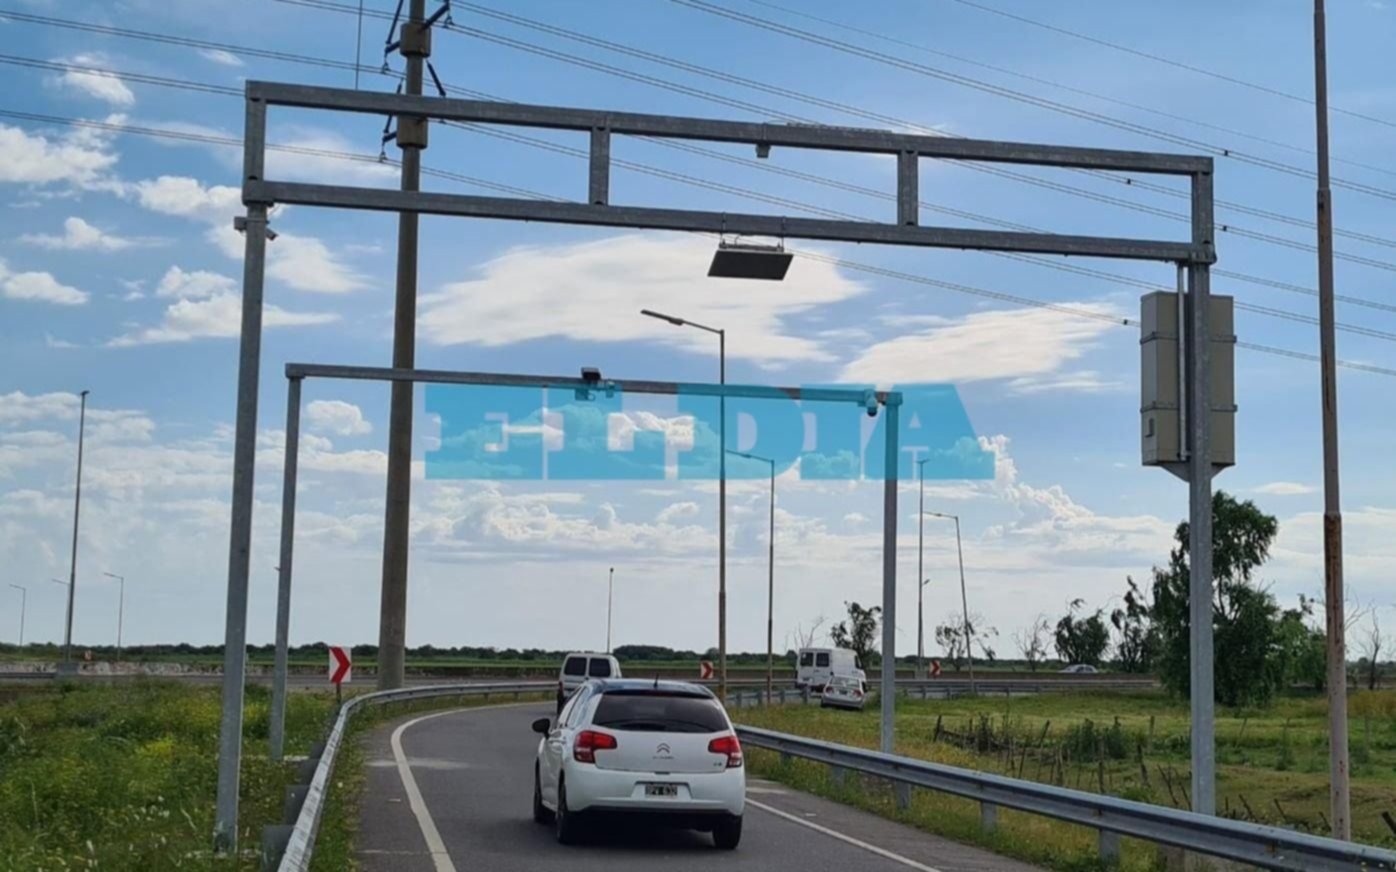 Cuánto vas a pagar de Villa Elisa a La Plata por Autopista con el nuevo peaje